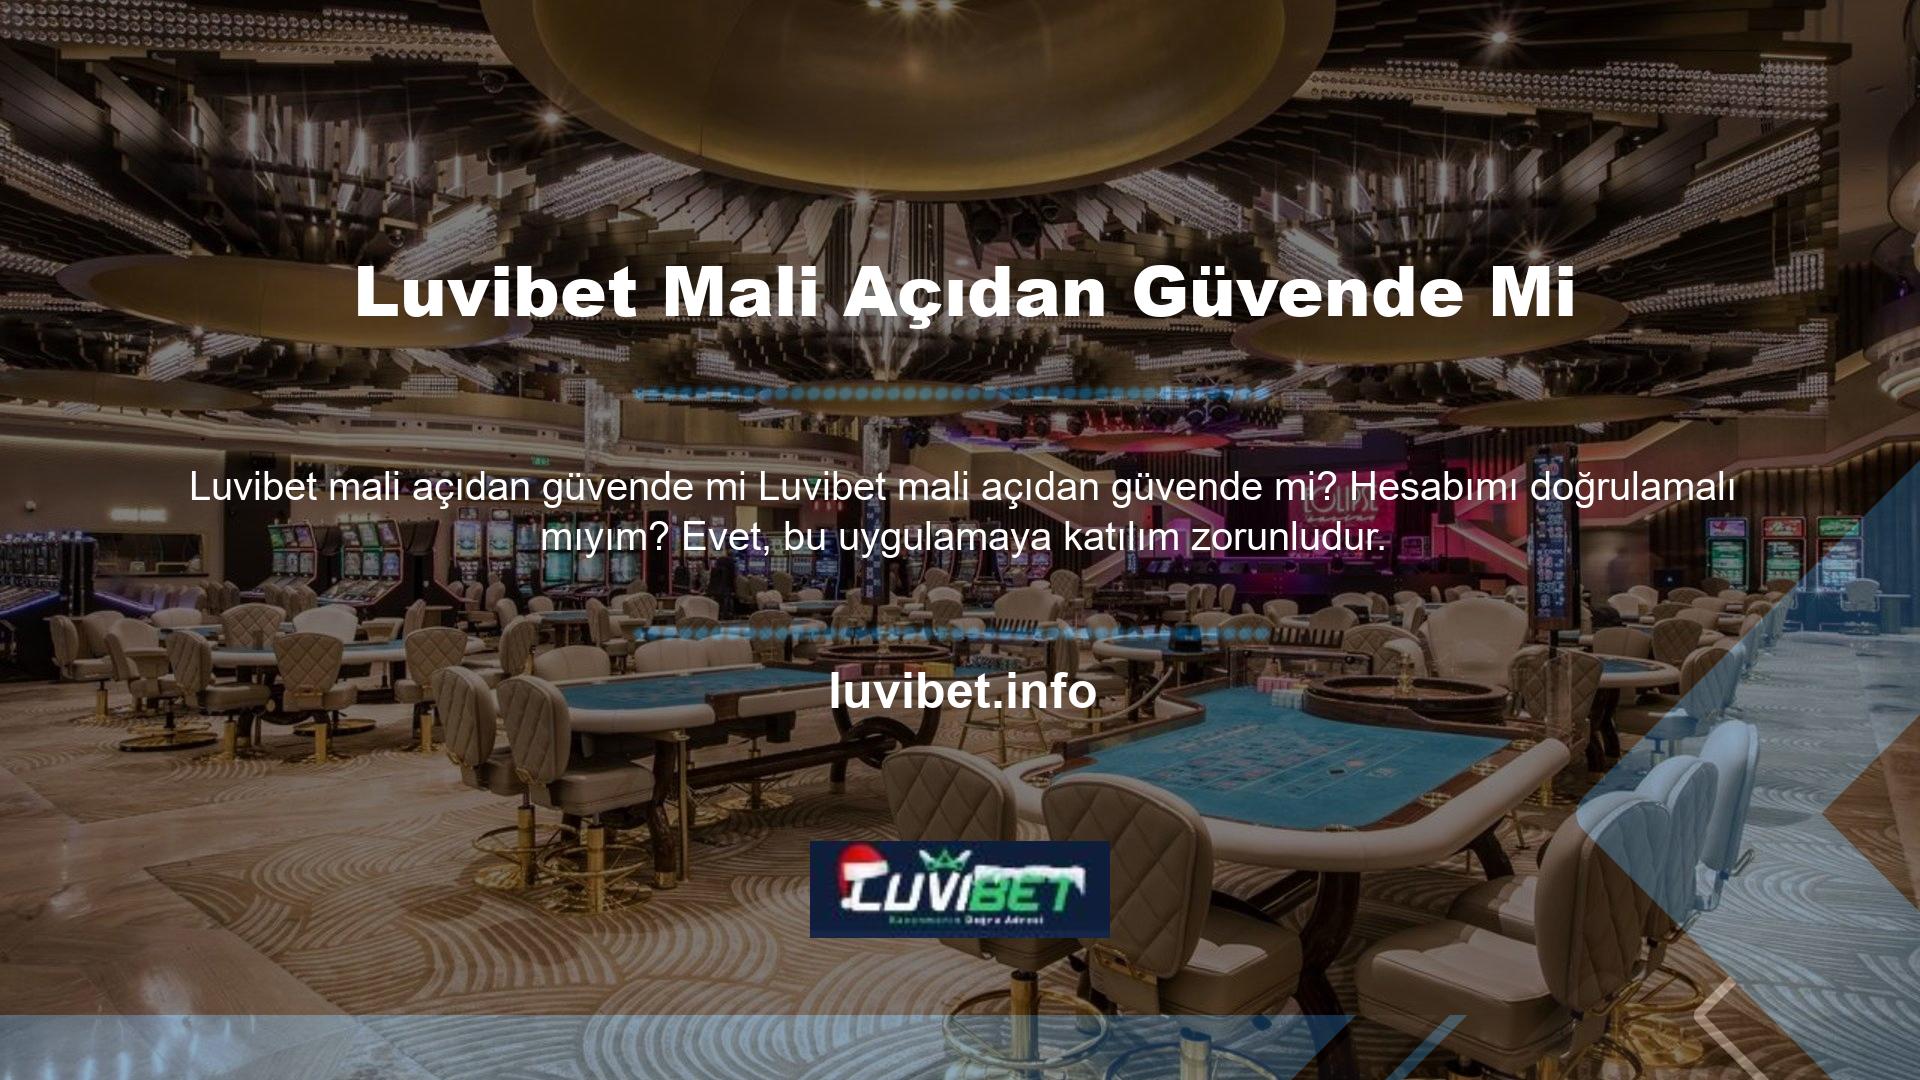 Luvibet web sitesi, düzgün çalışan birkaç denizaşırı casino sitesinden biridir